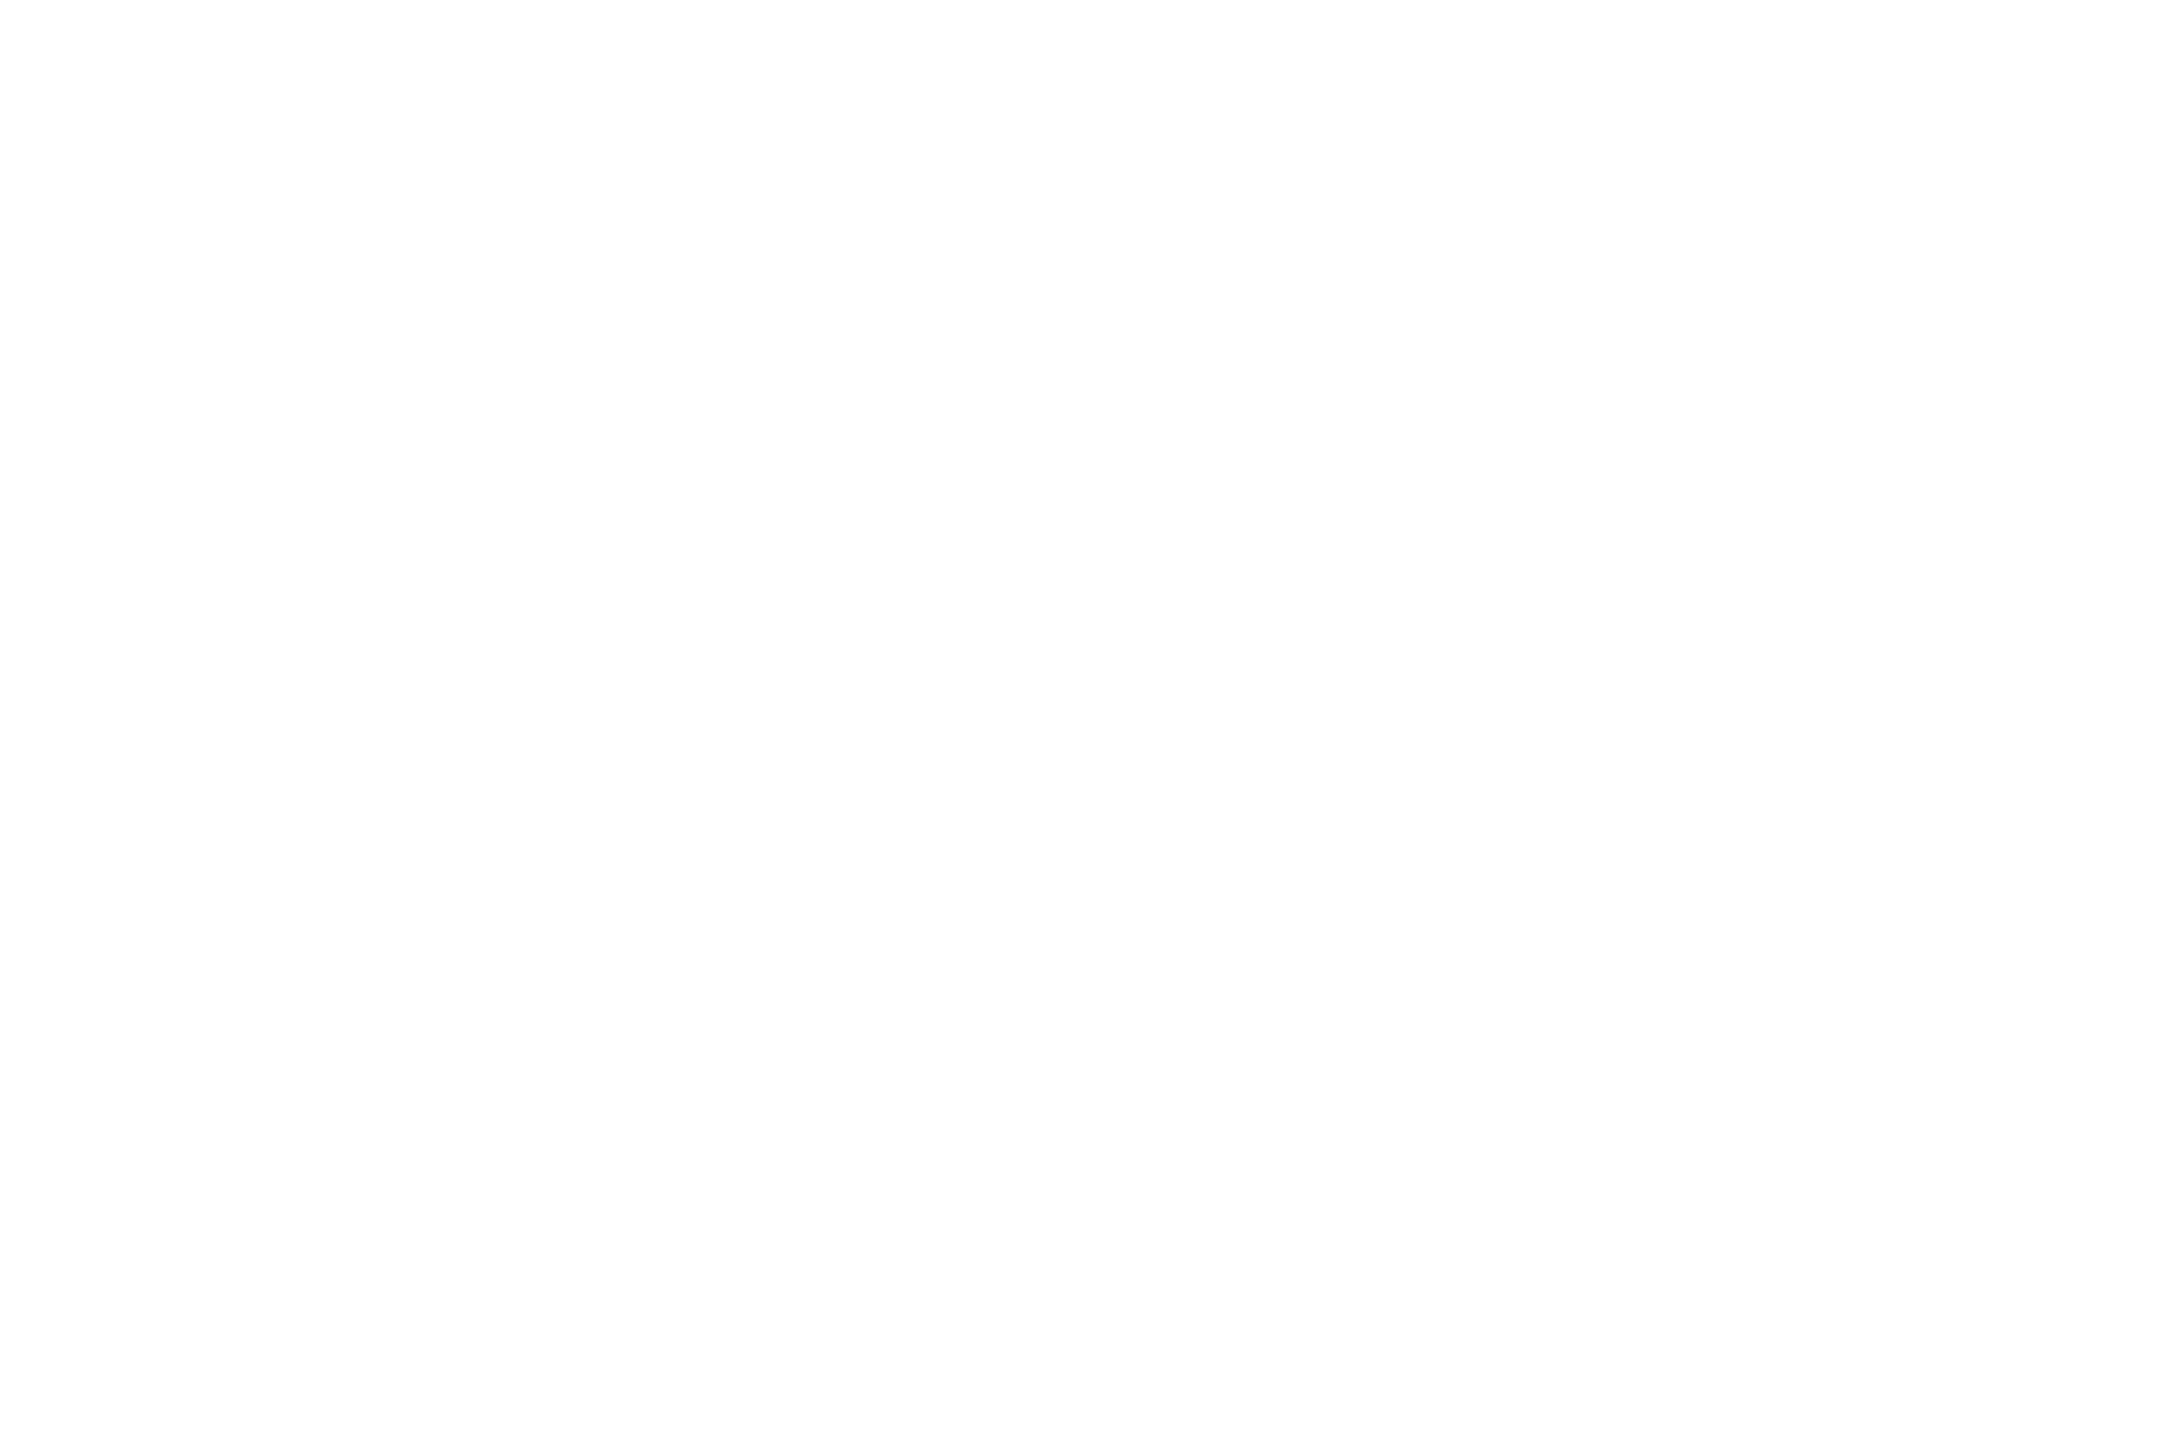 Boshkung Brewing Co.